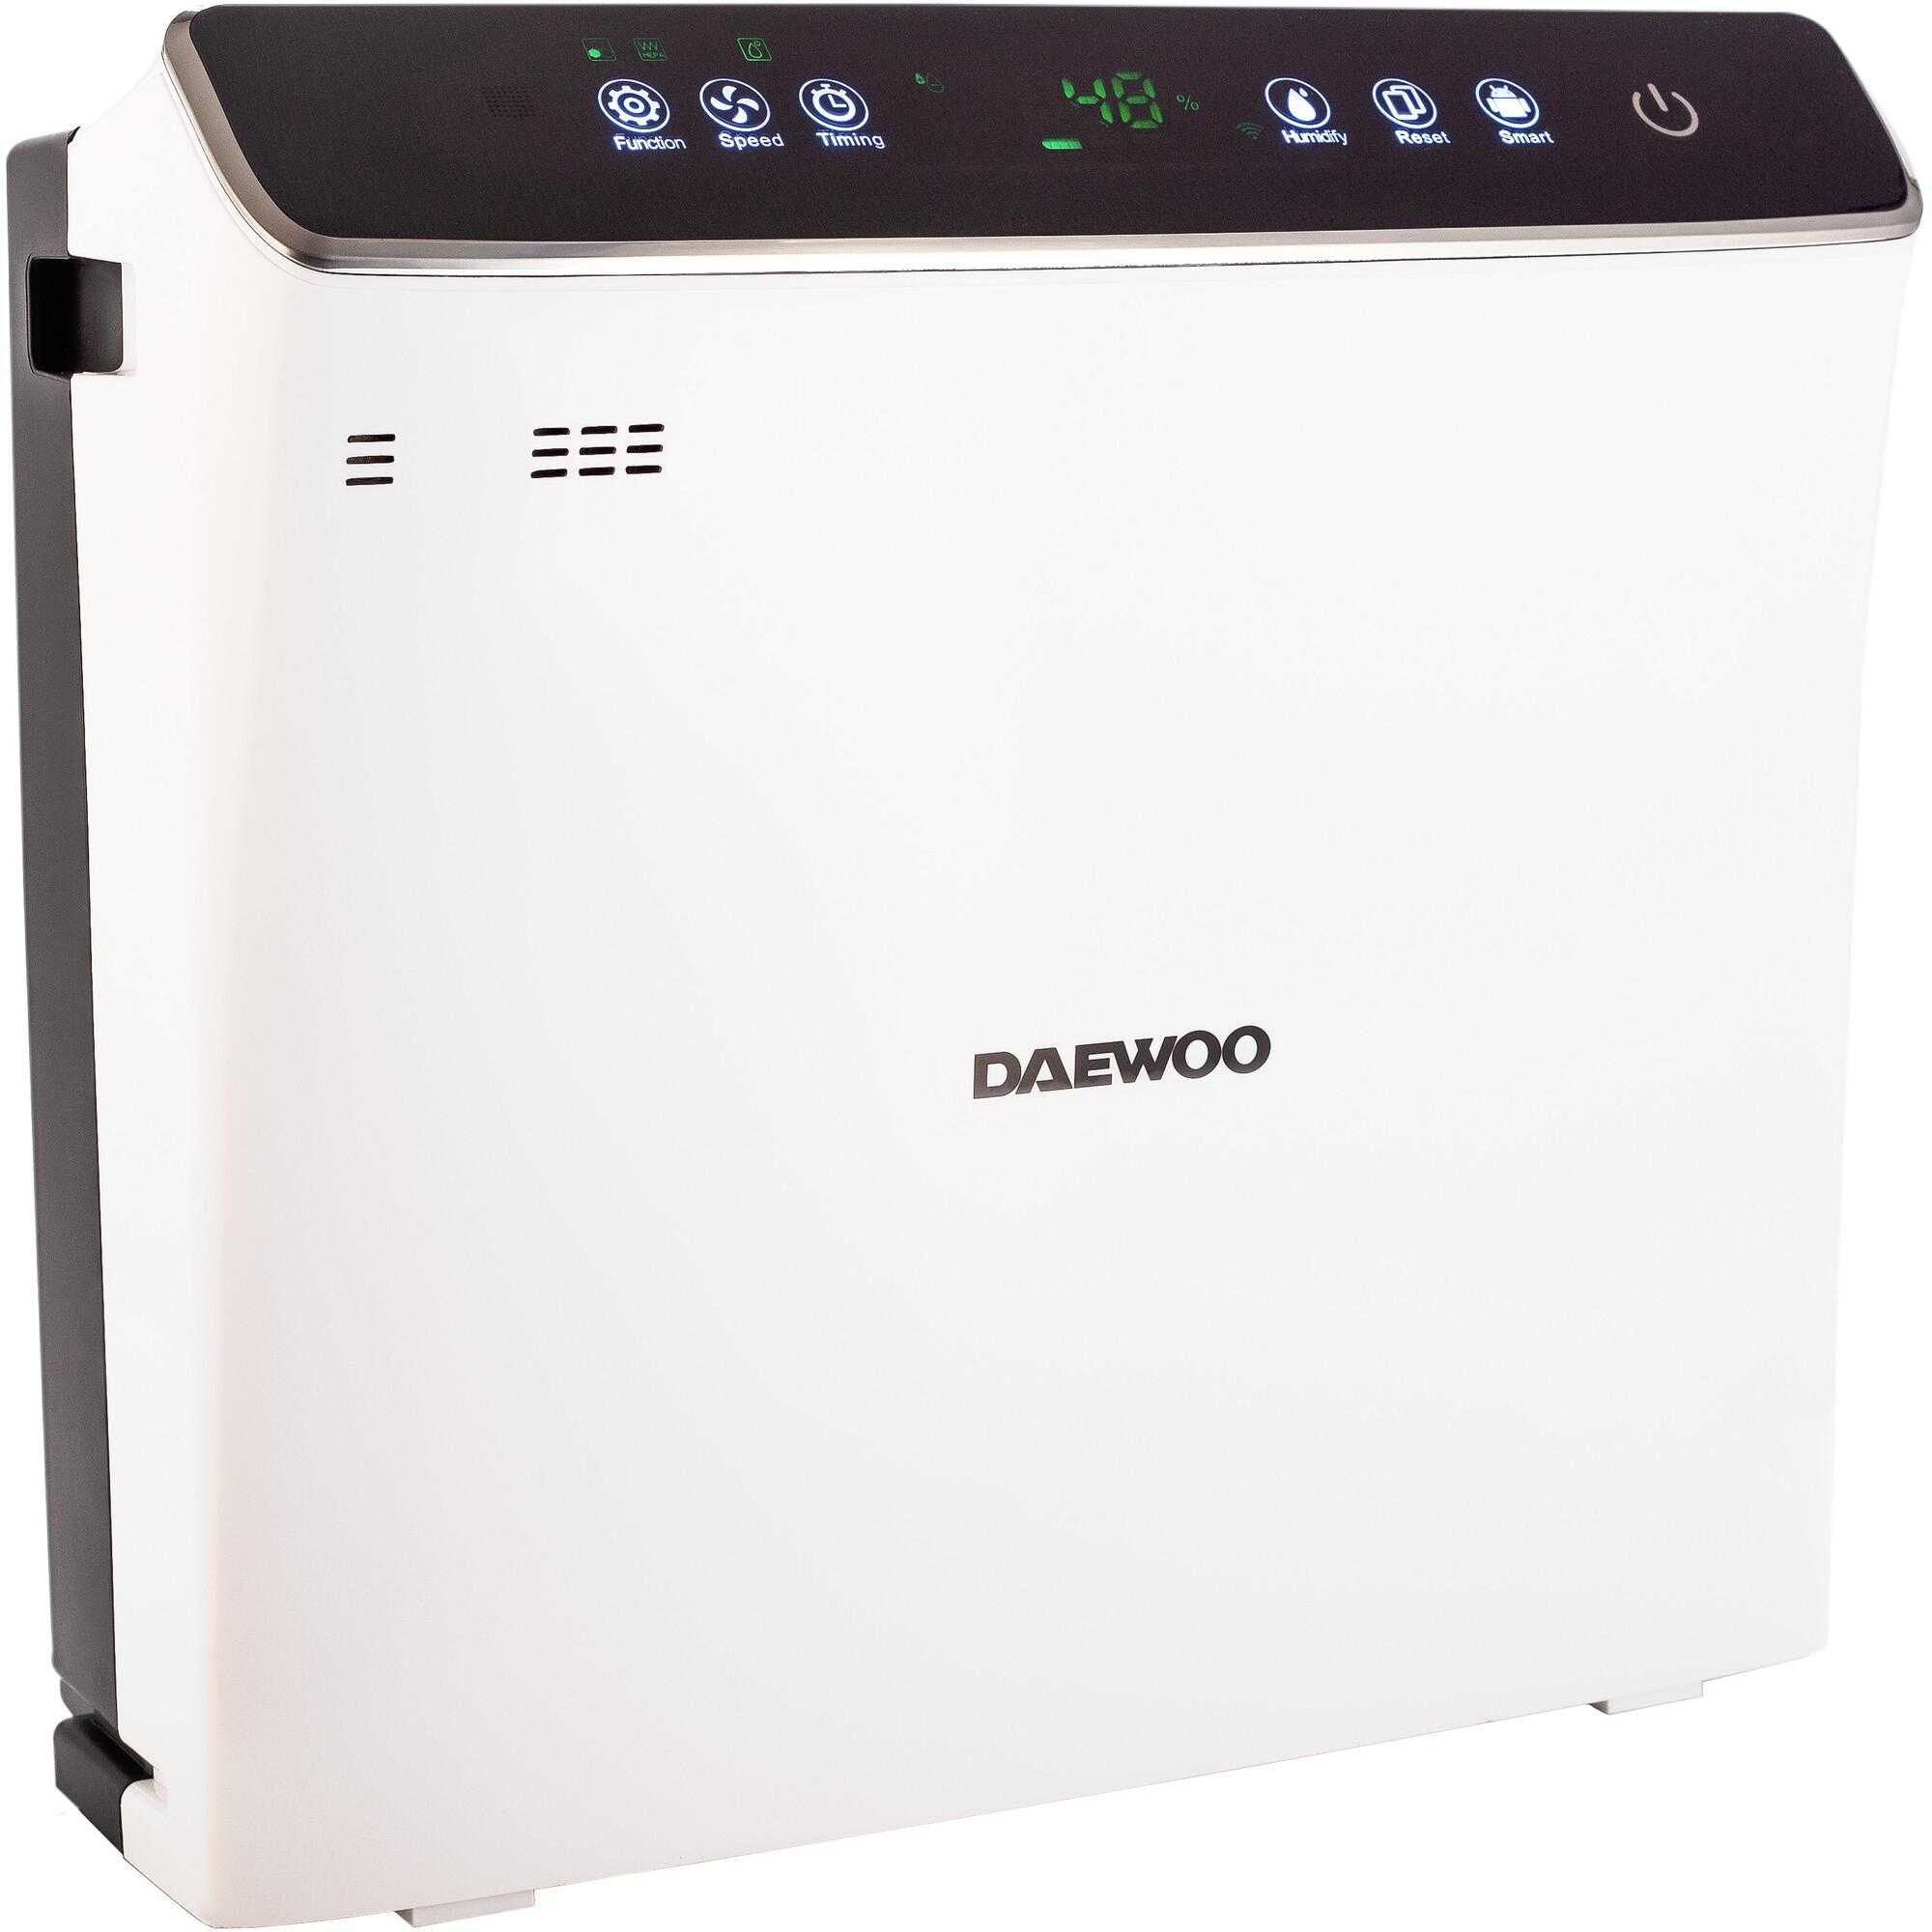 Purificator de aer si umidificator Daewoo DAP400, Wi-Fi, 300 m³/h